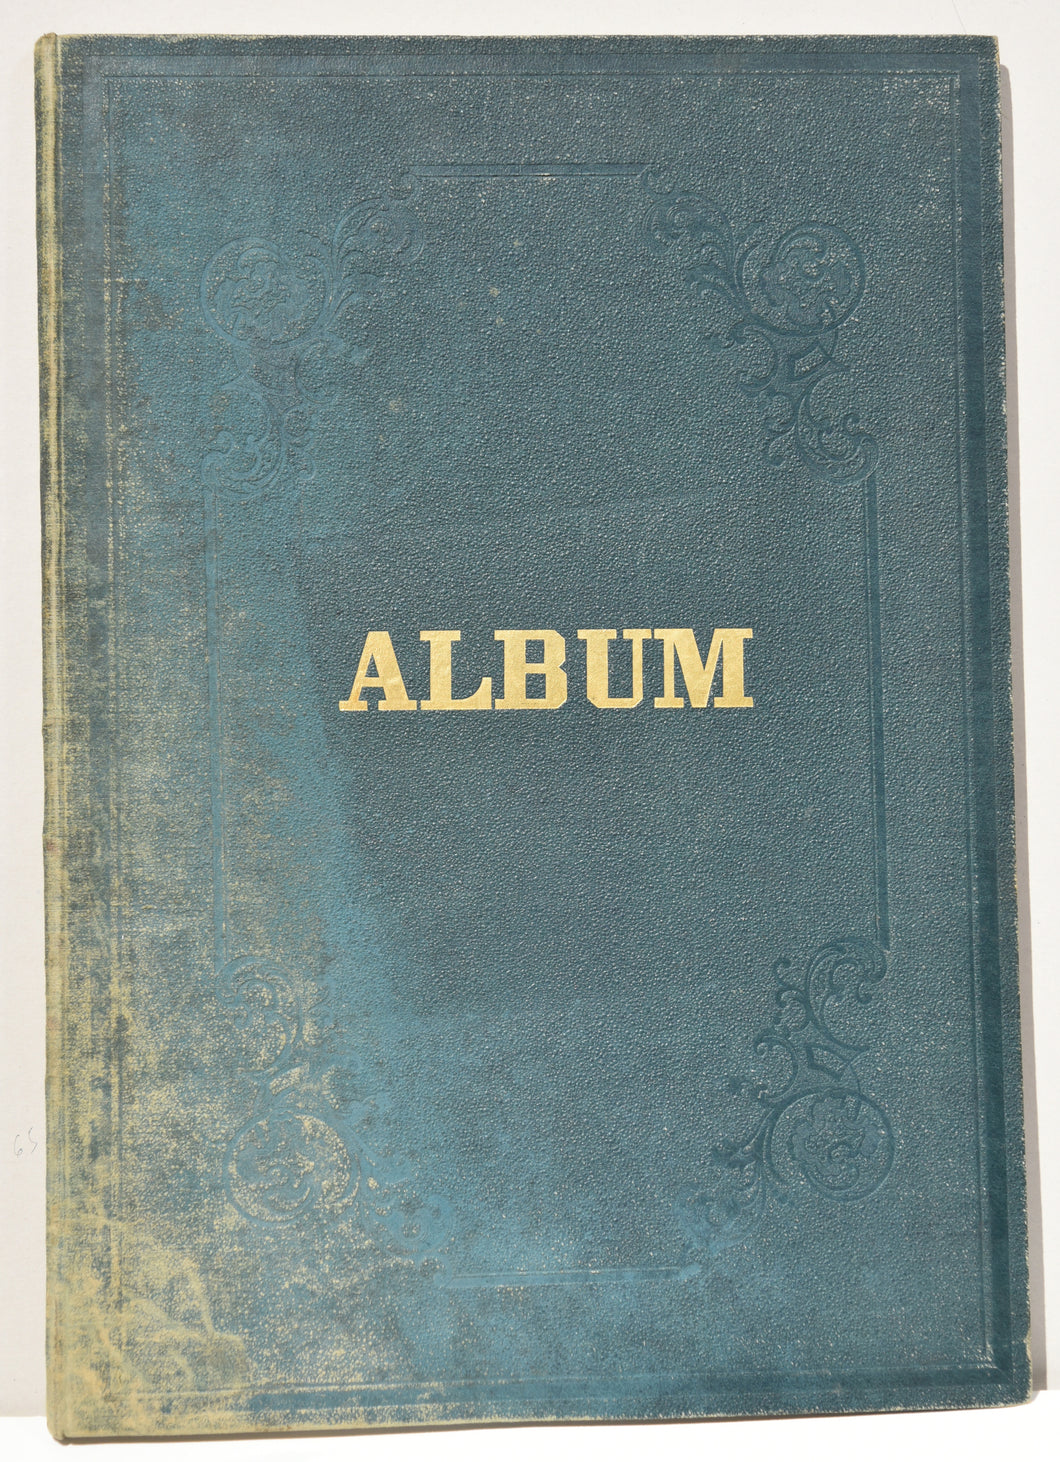 Album réunissant quatorze lithographies de l'artiste.